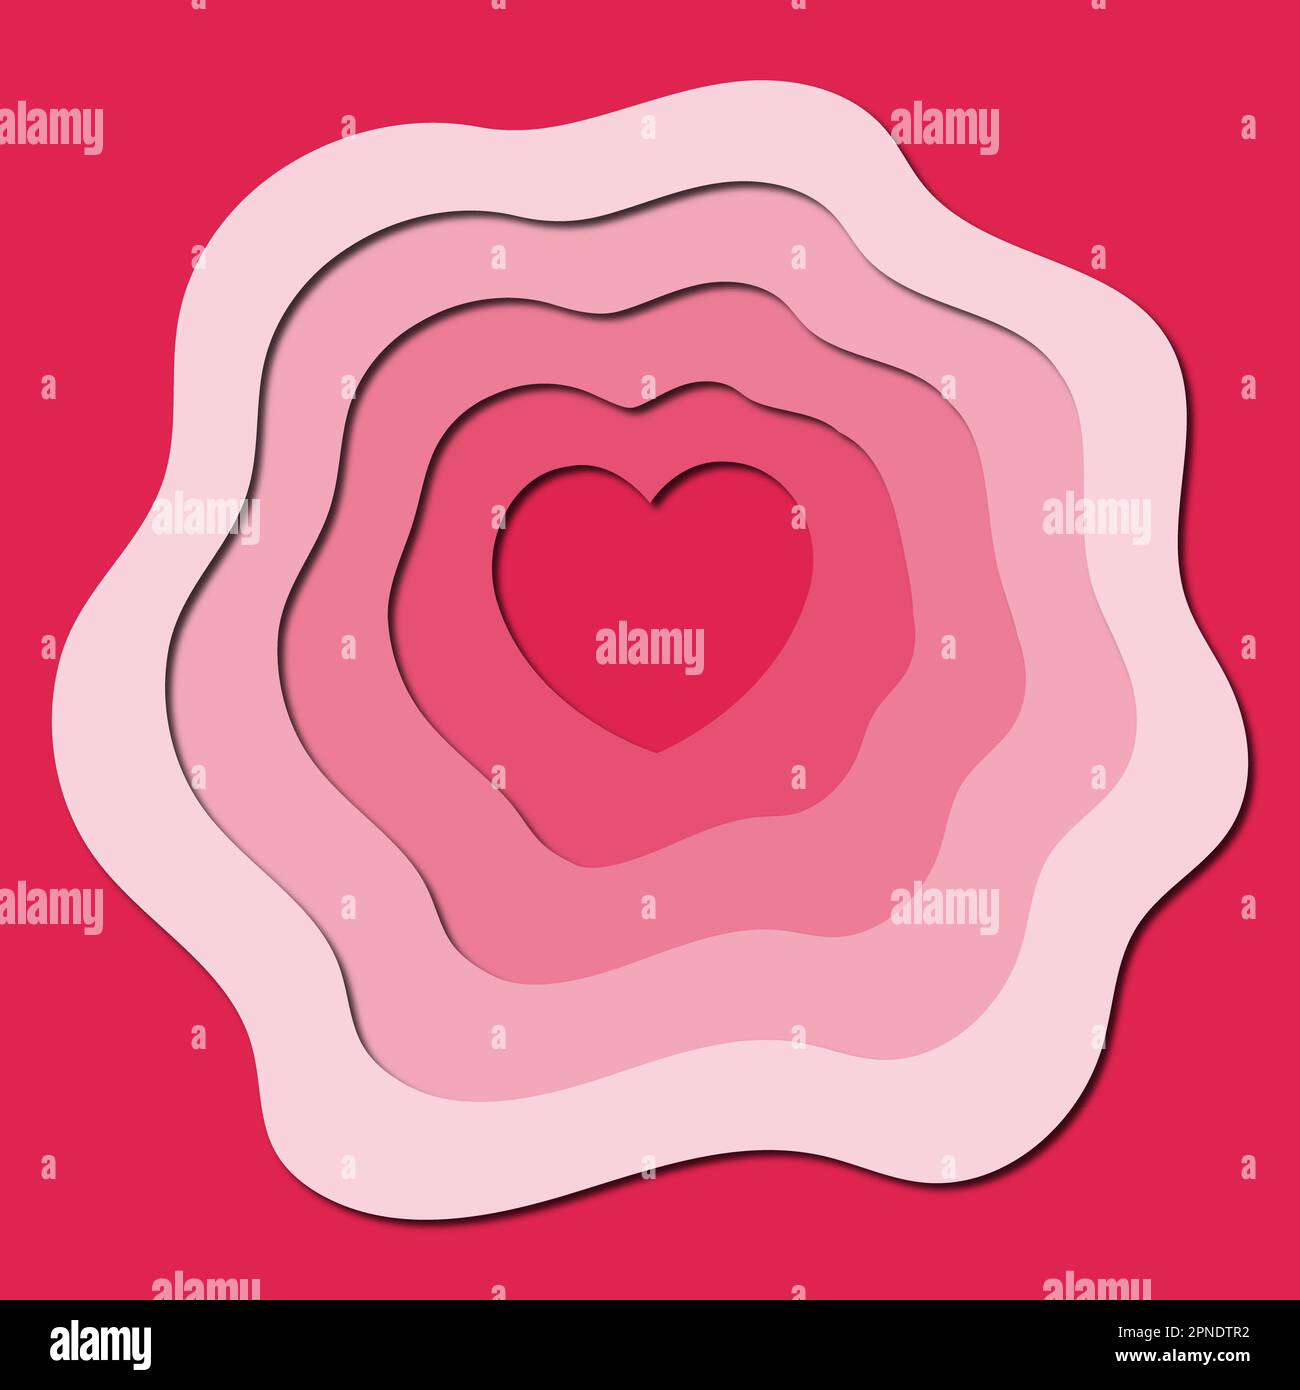 Papiergeschnittene Kunst mit Herzform eignet sich am besten für romantische Designs, valentinstag, Liebesmotive. Stockfoto